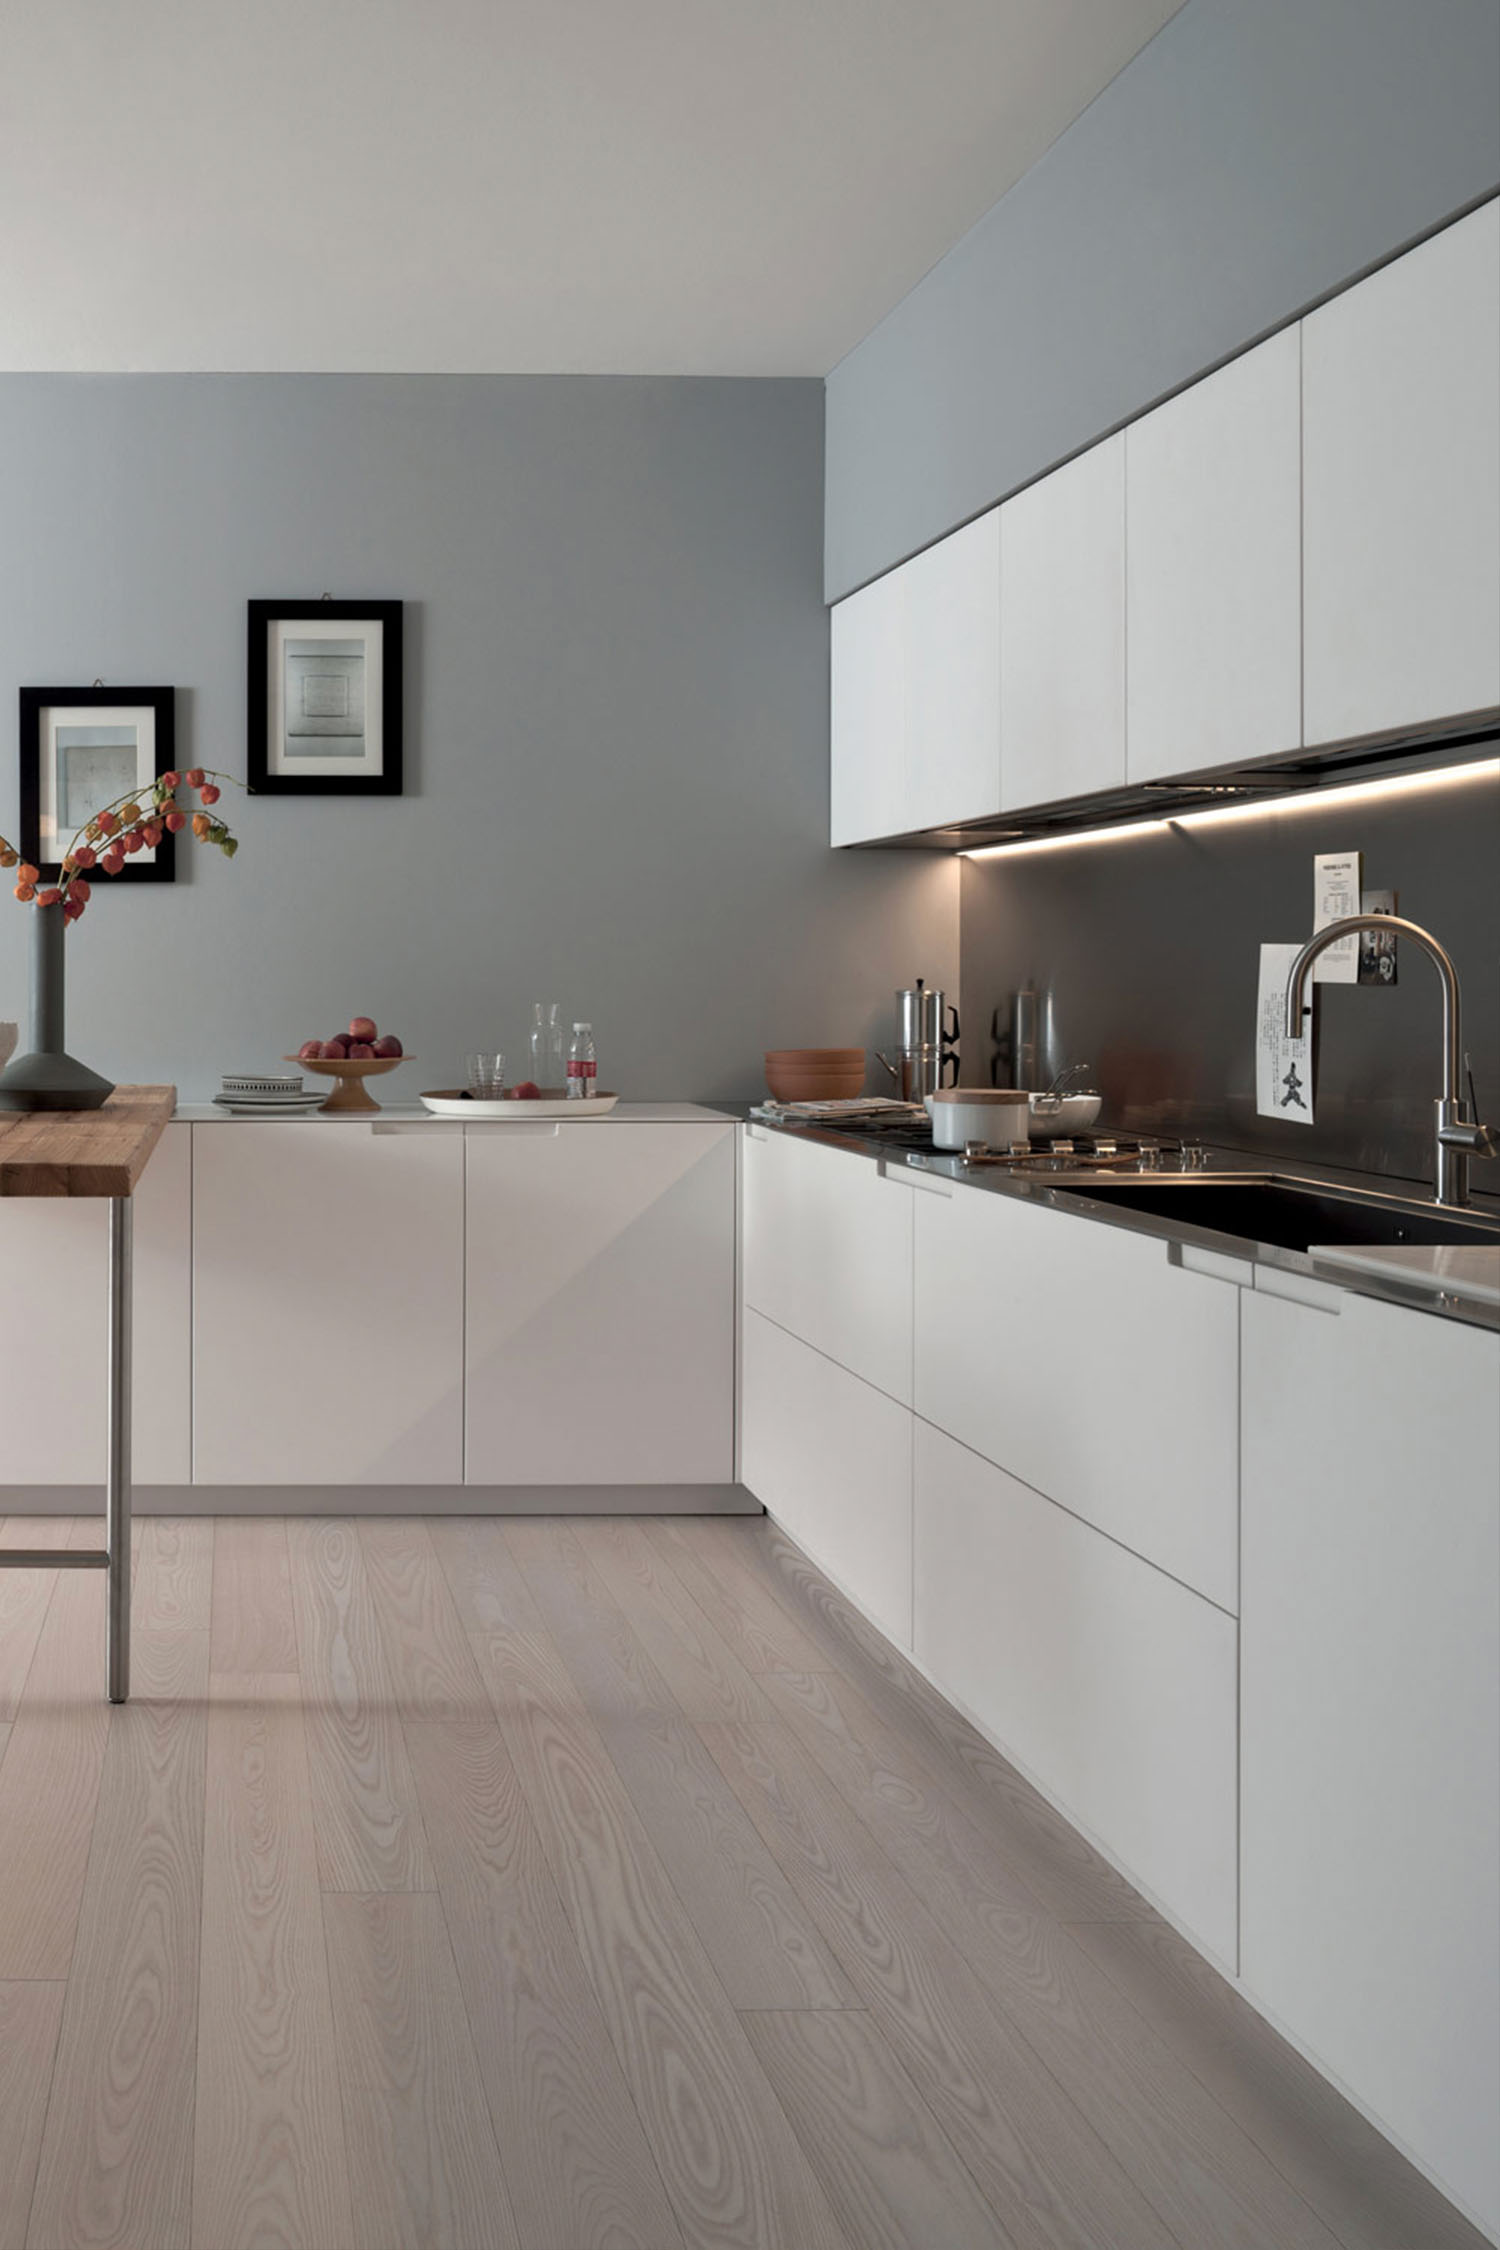 Luxury kitchens in Wimbledon, London. Kitchen design by Krieder studio UK